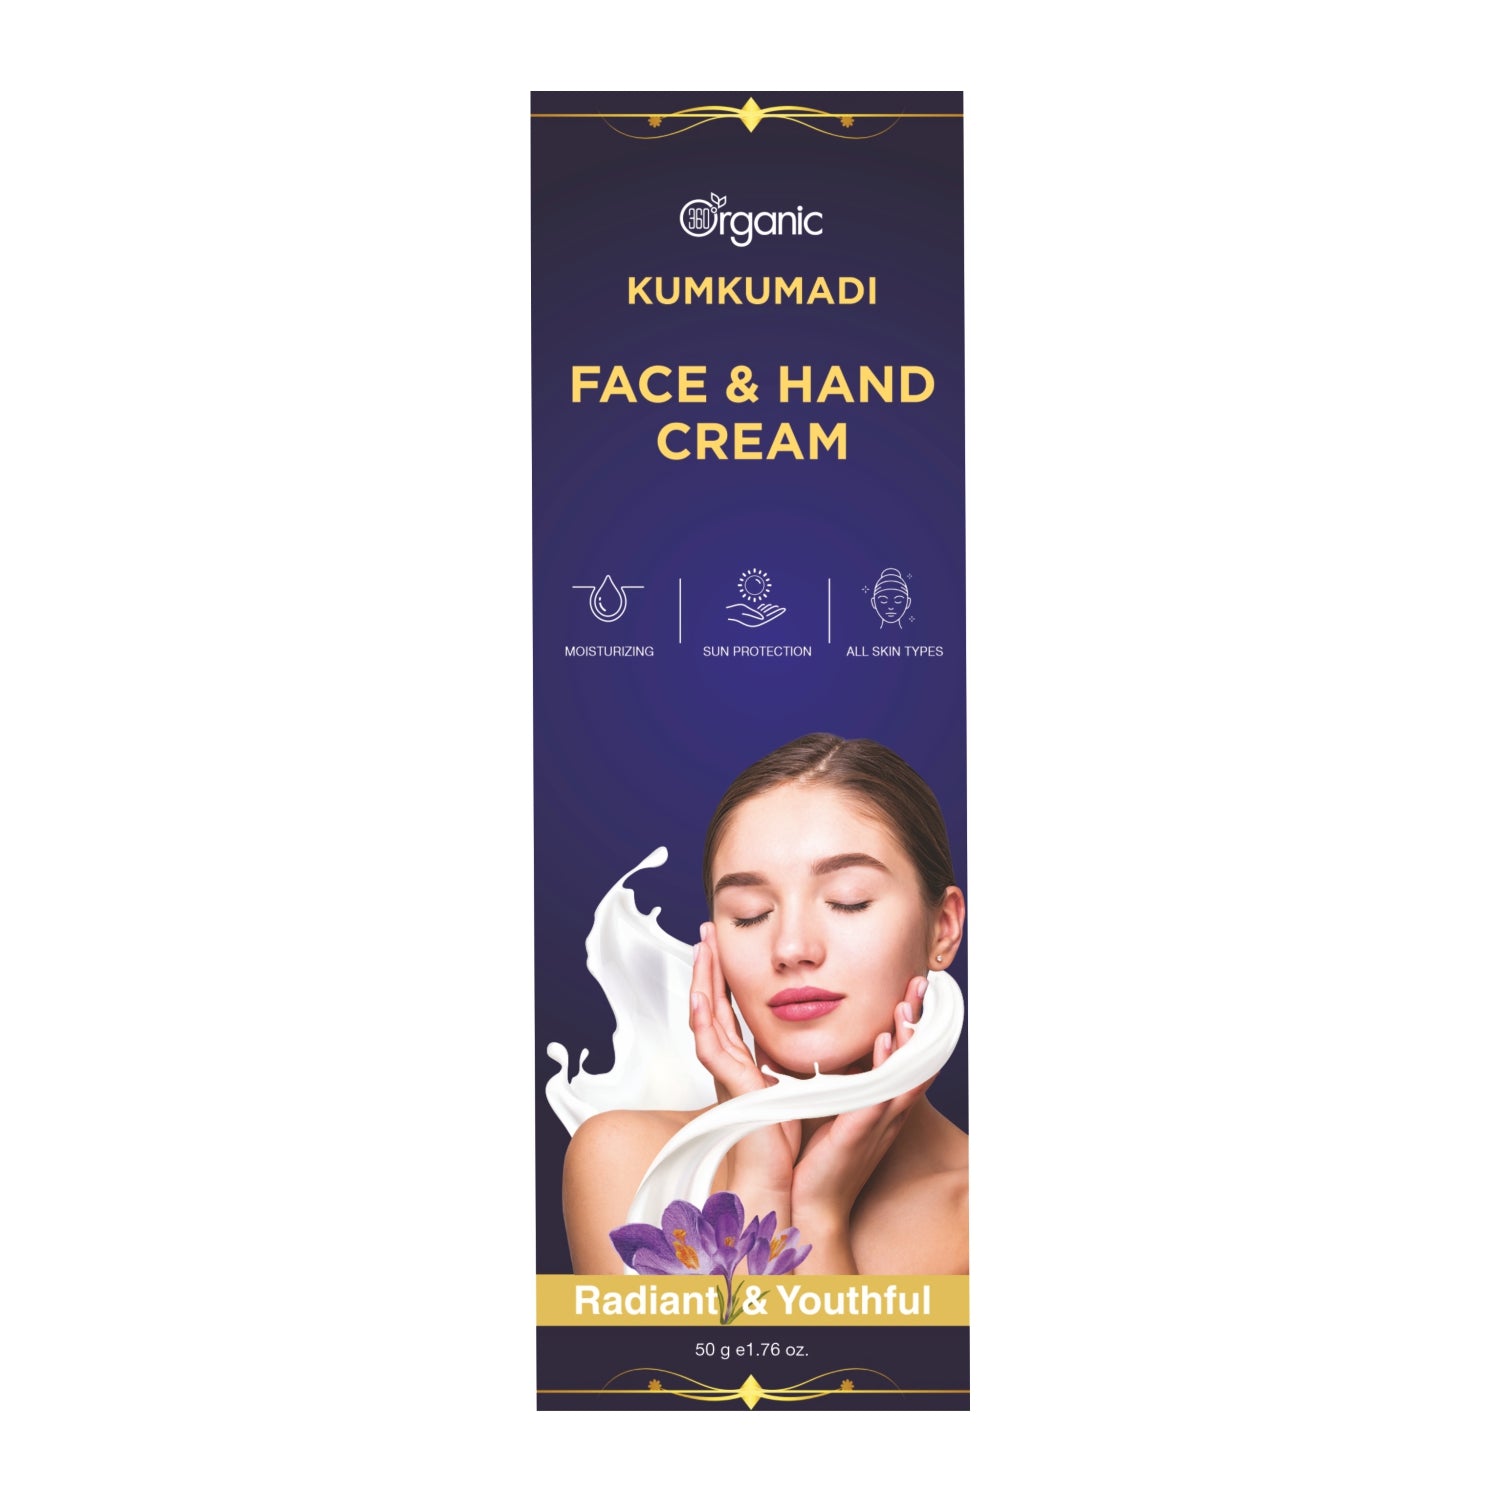 360 Degree Organic Kumkumadi face and hand cream for Moisturising Face and hand Cream for Glowing Skin - 50g